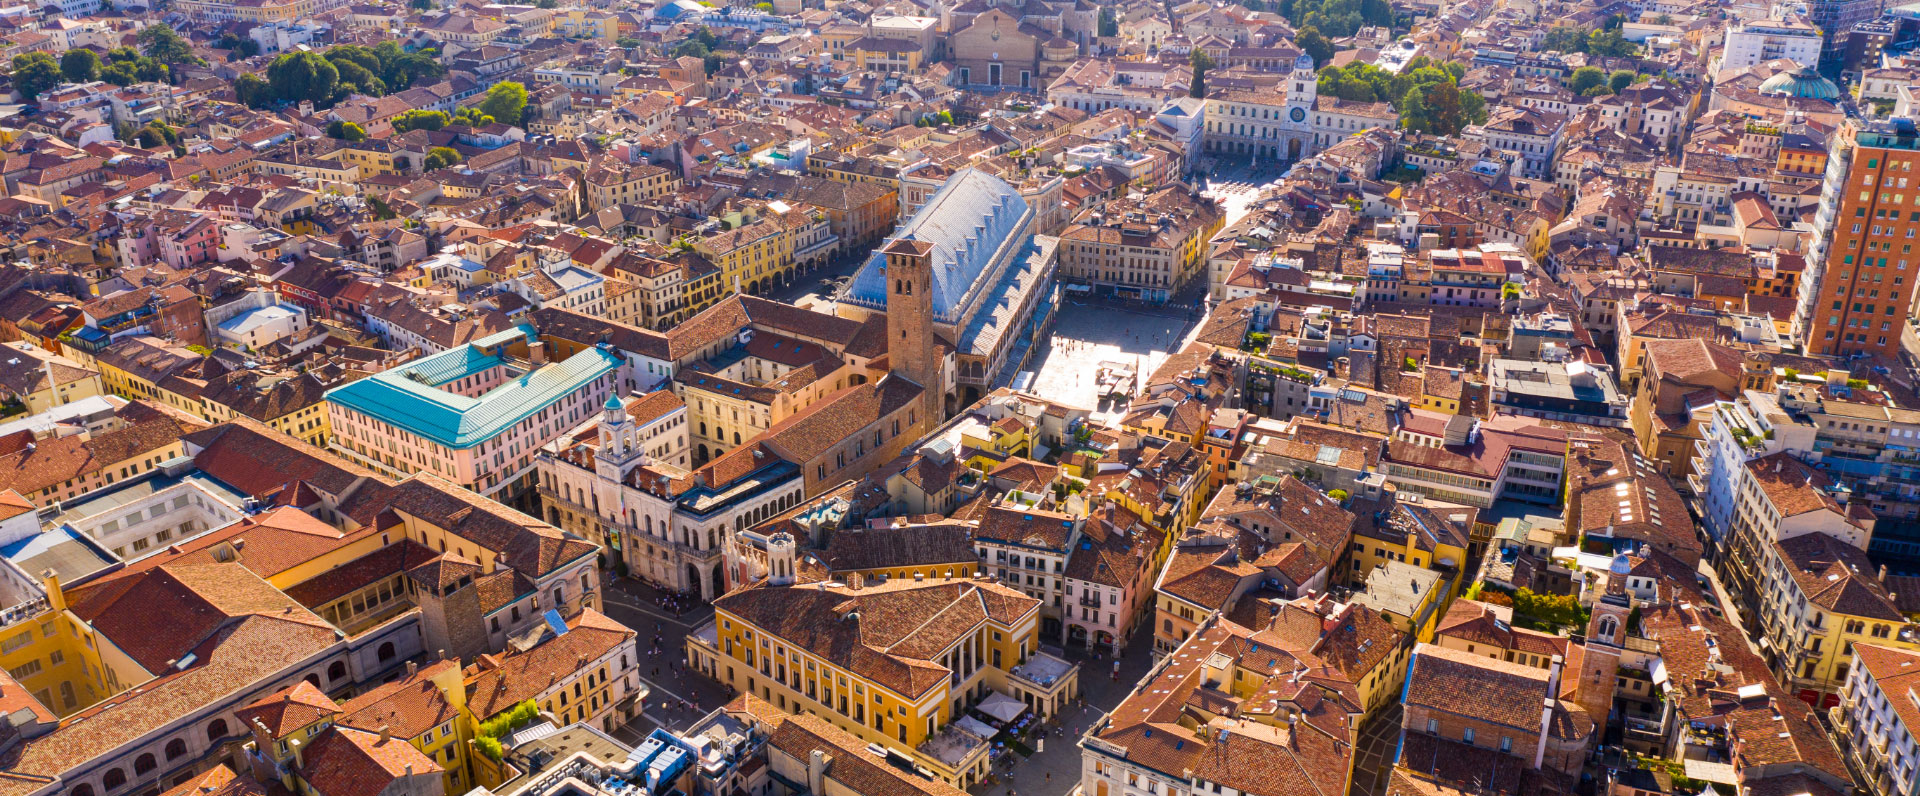 APS Holding Padova servizi per la città intelligente